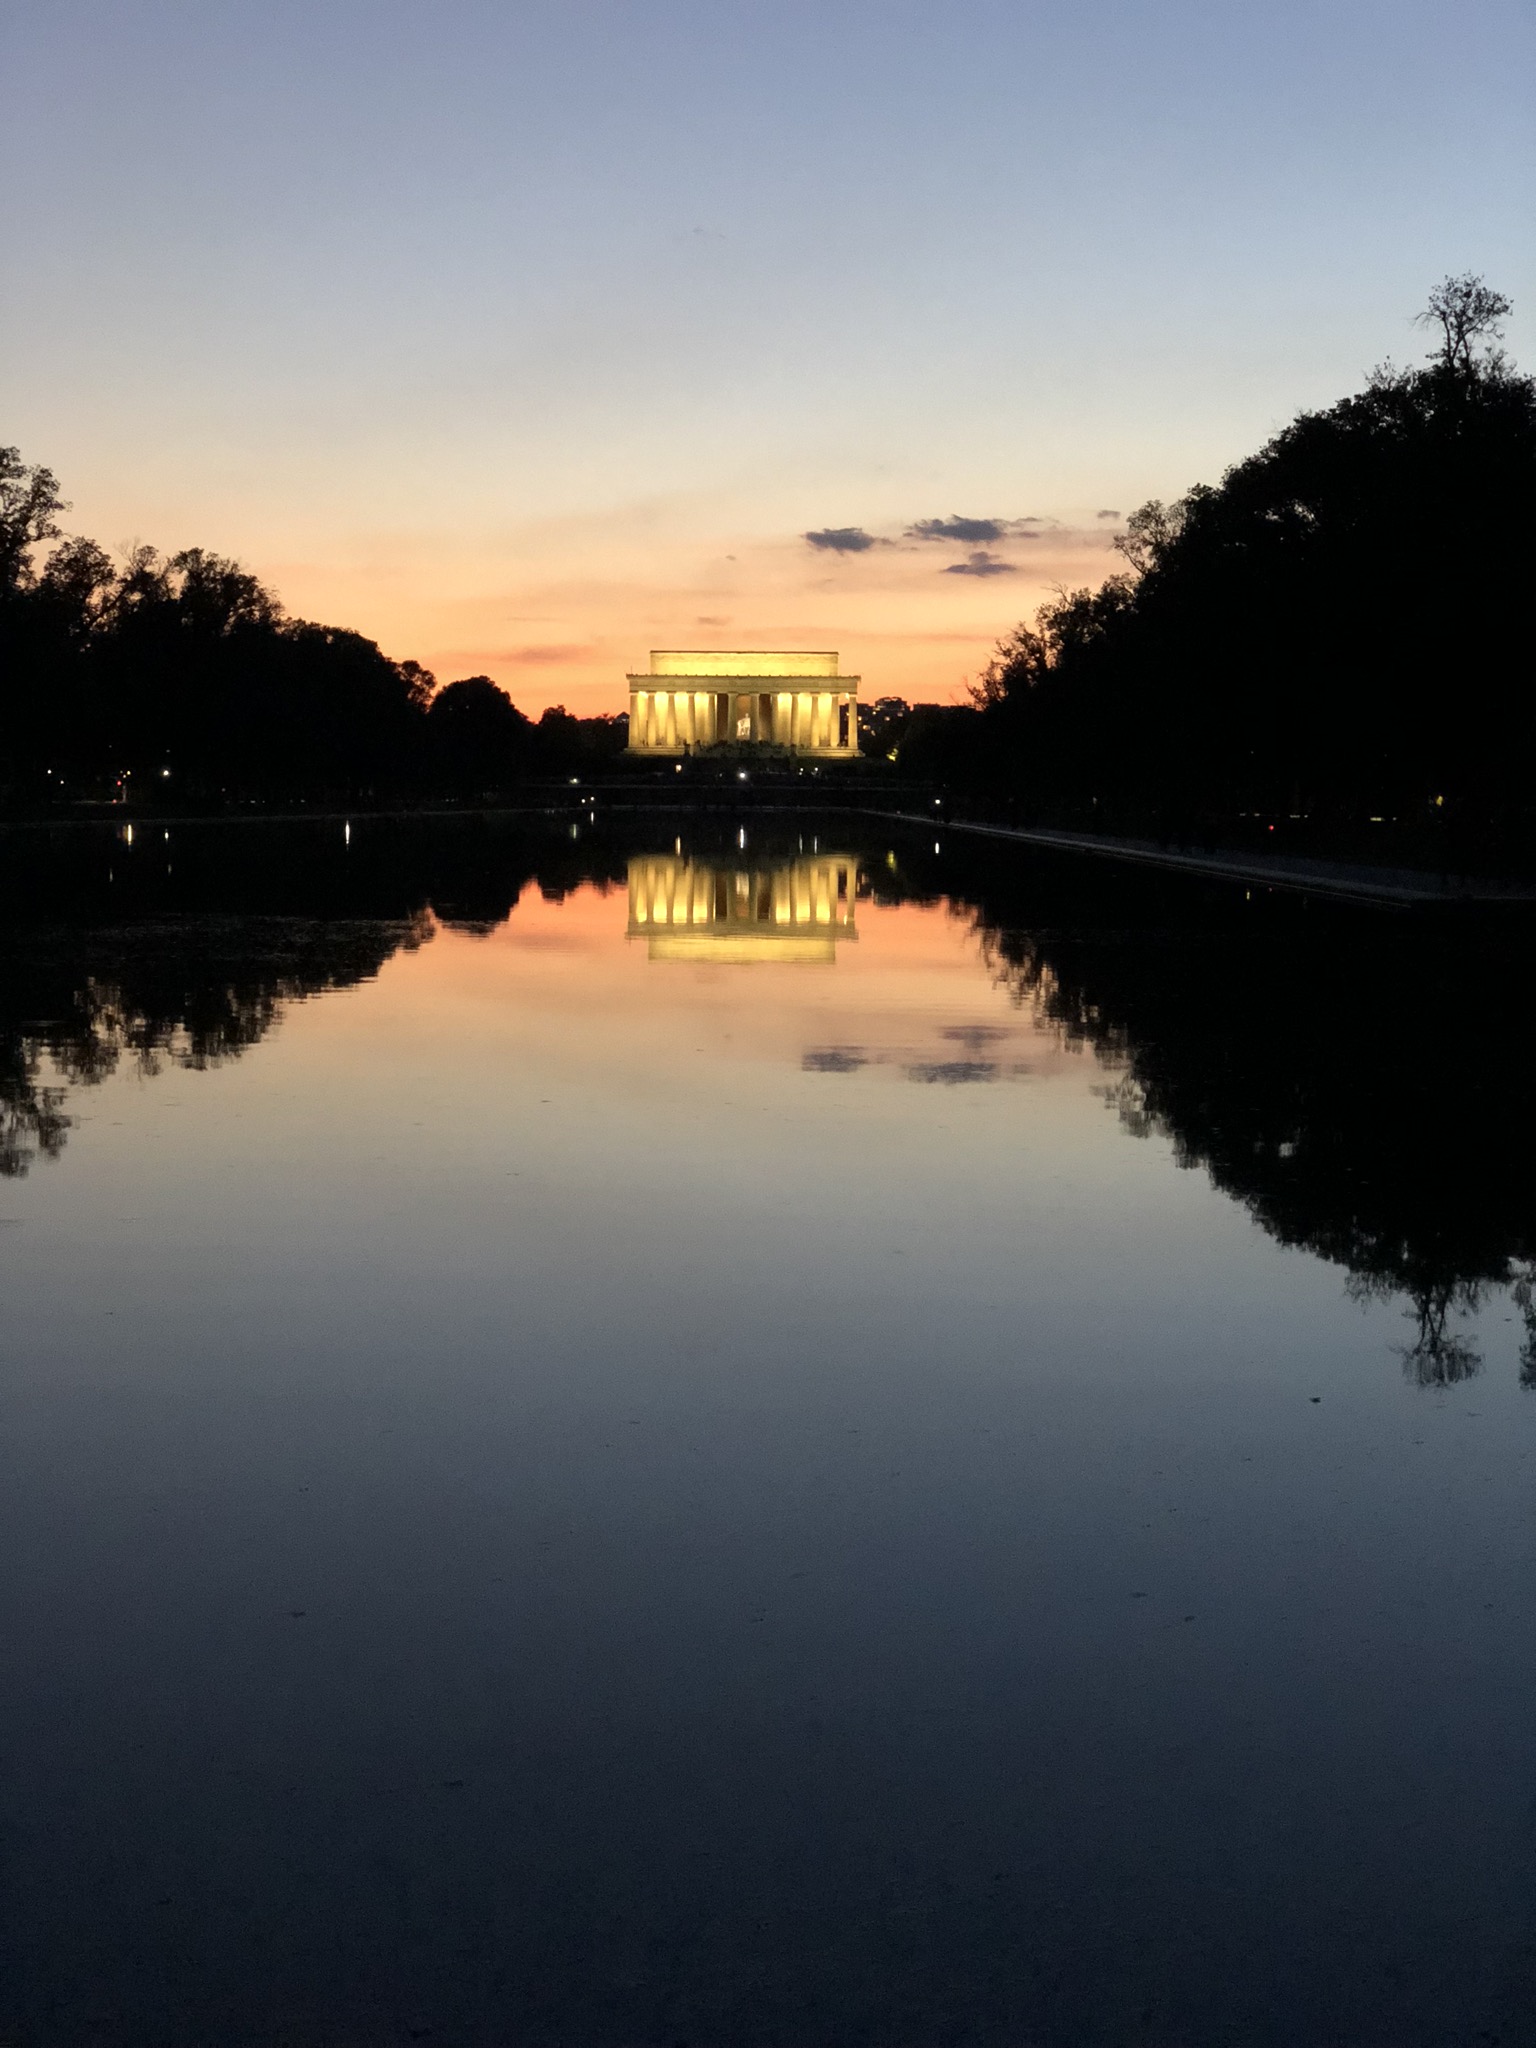 Vue du Mémorial Lincoln soleil couché, de loin